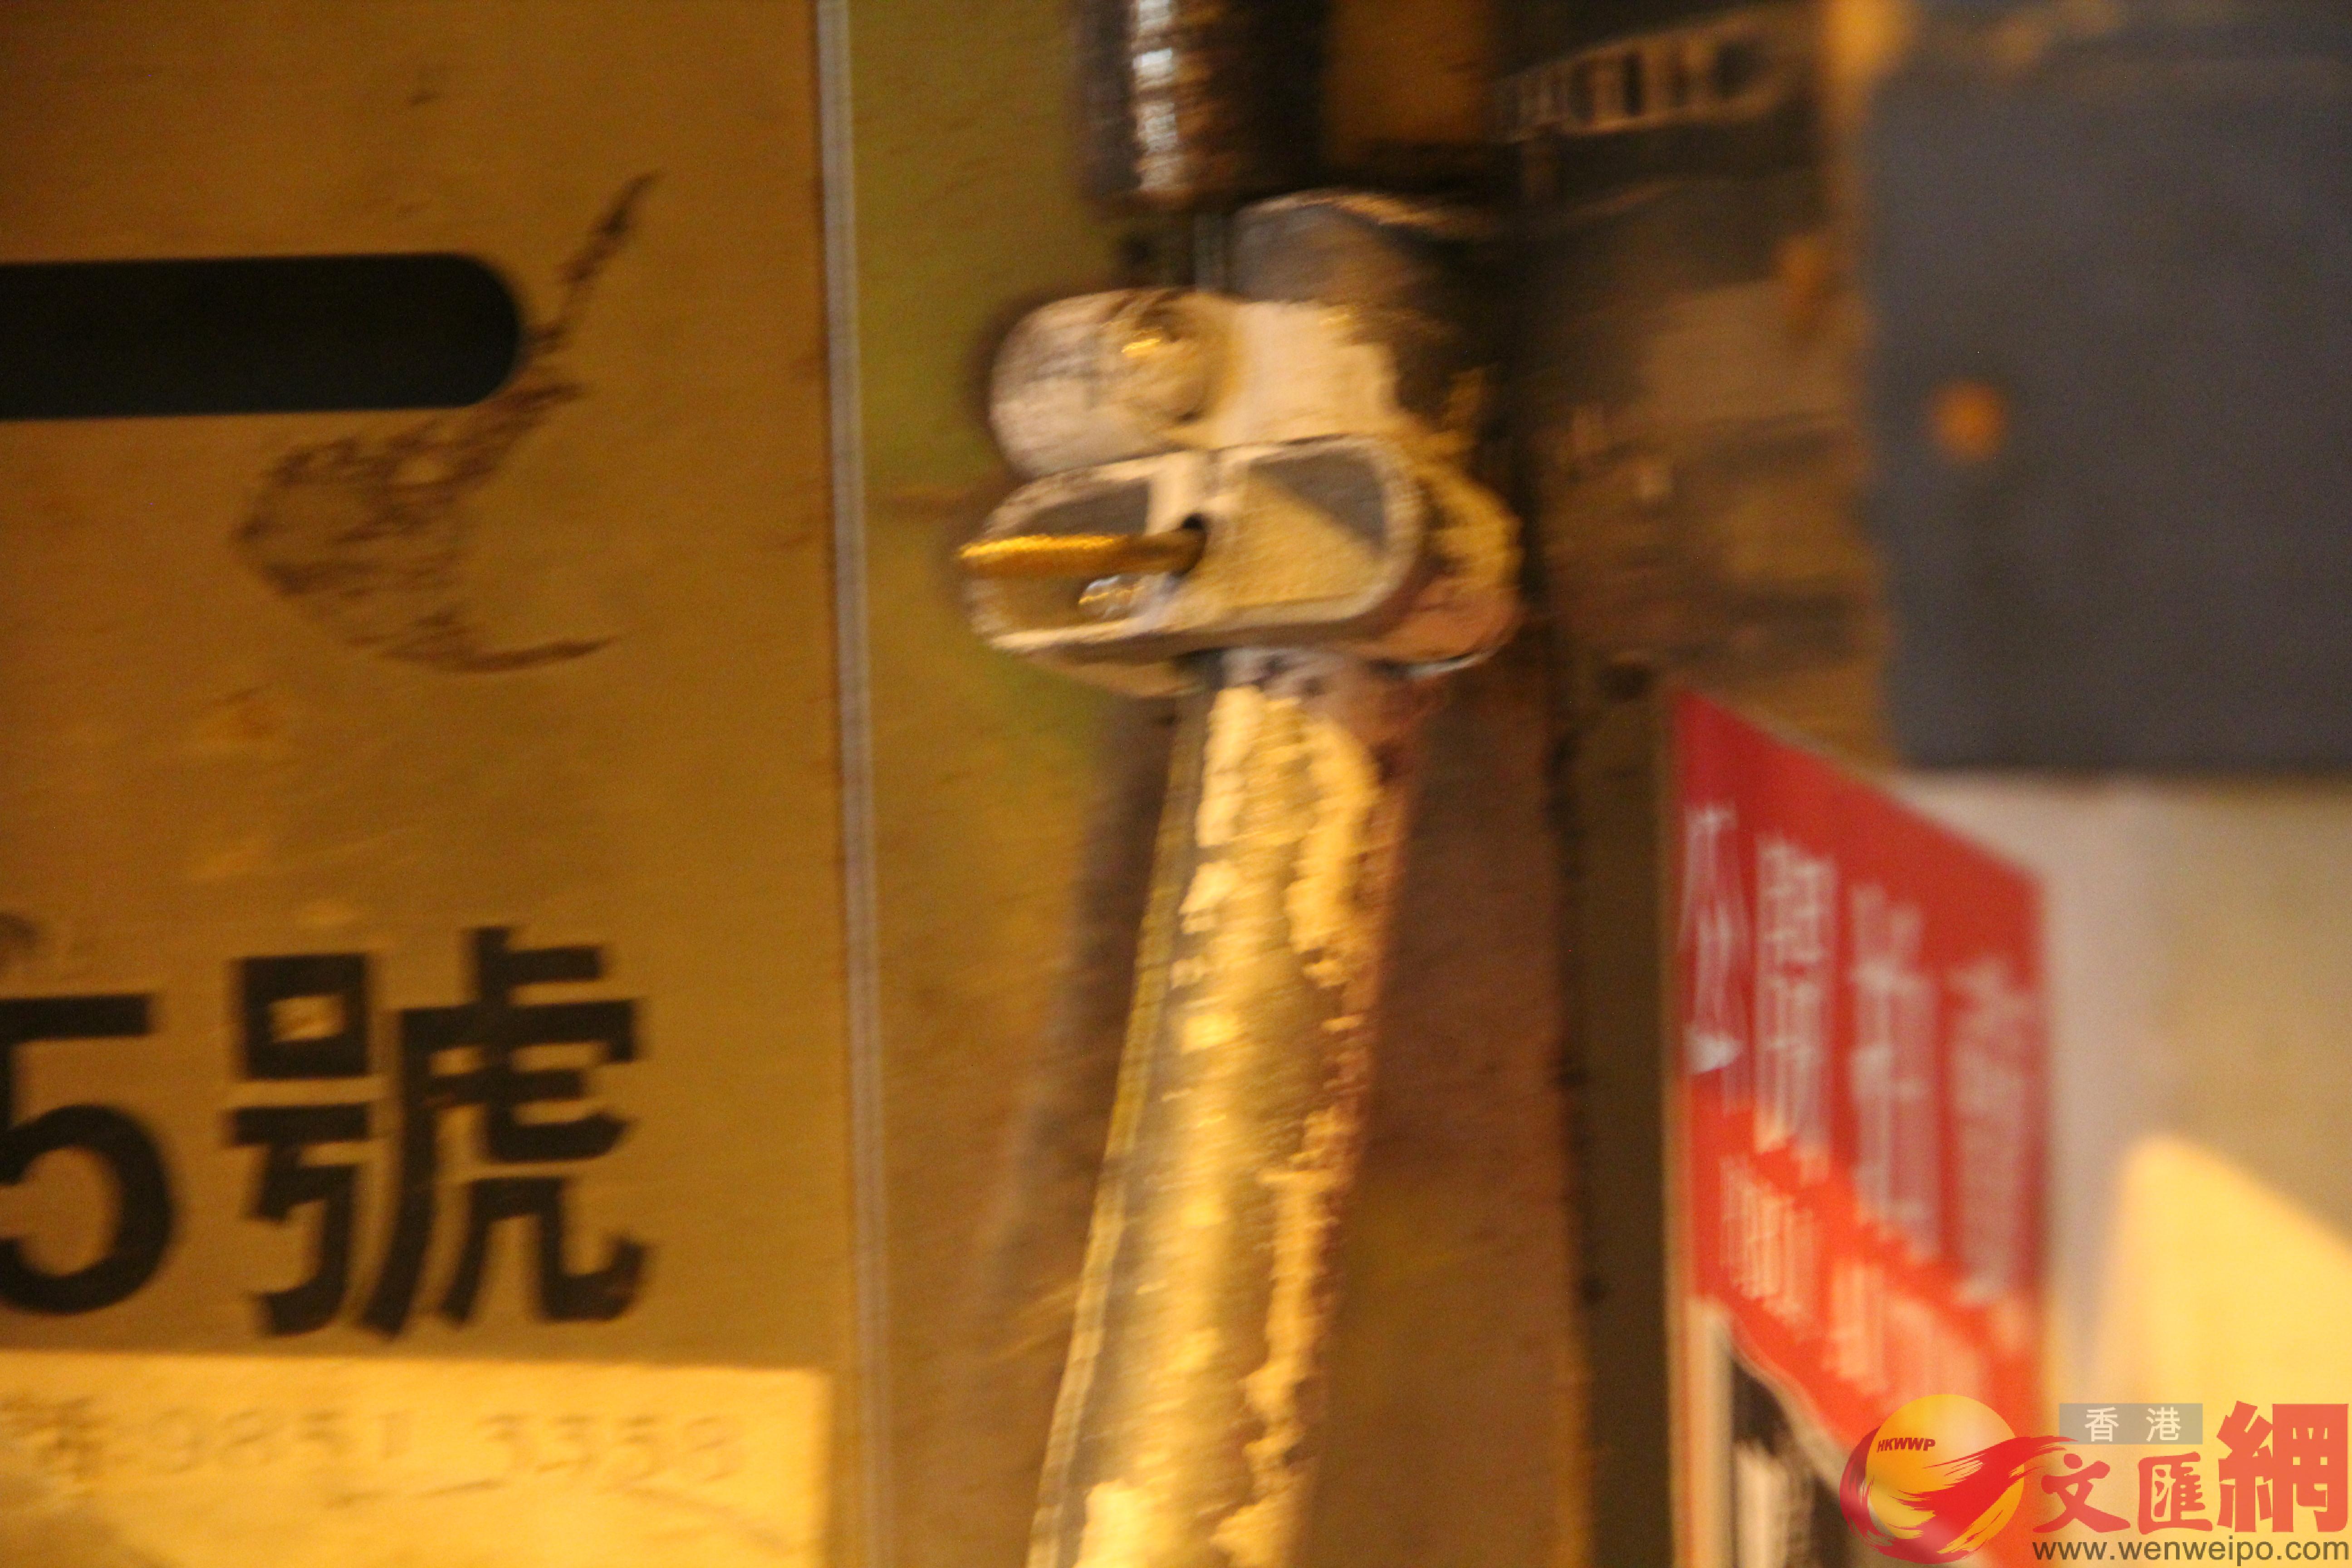 立在門邊的鐵管加裝了長釘]大公文匯全媒體記者攝^ 